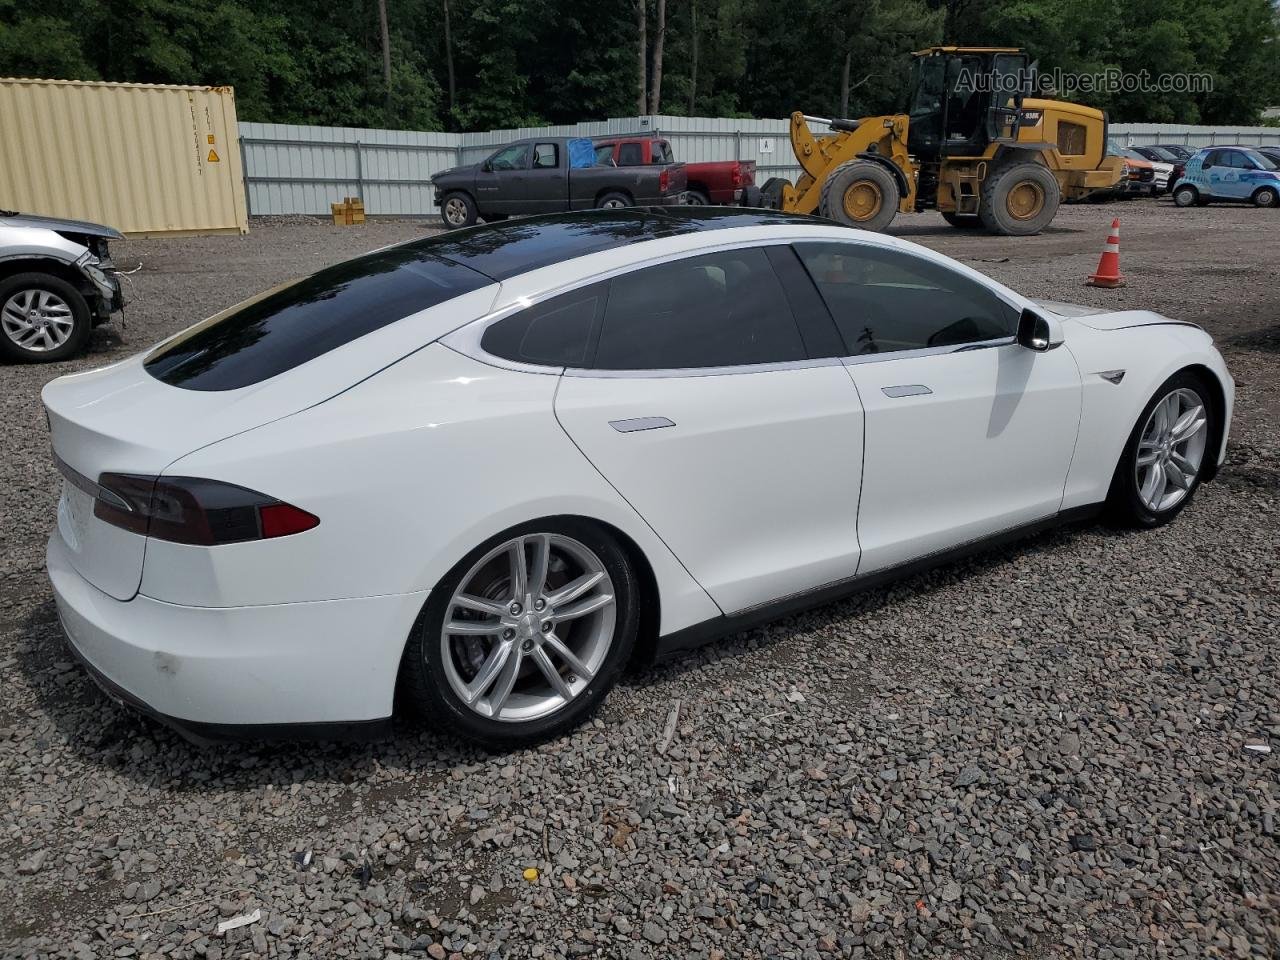 2013 Tesla Model S White vin: 5YJSA1CG0DFP03948